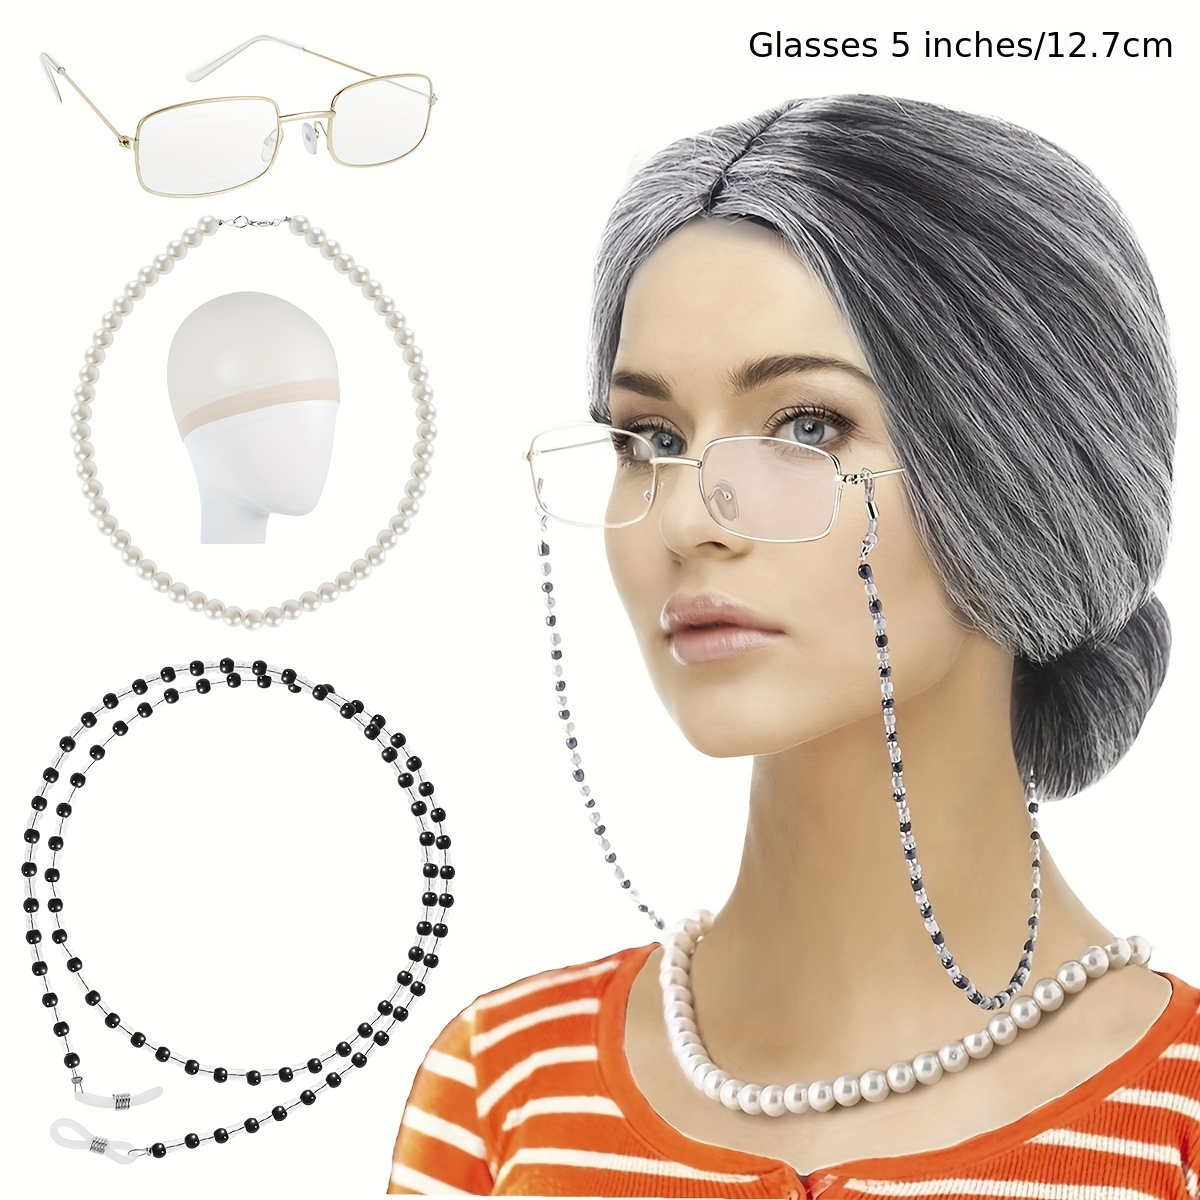 Costume de vieille dame avec perruque de grand-mère, châle de grand-mère,  lunettes de canne gonflable avec JOFaux, collier de perles, bracelet,  boucles d'oreilles, 7 pièces - AliExpress